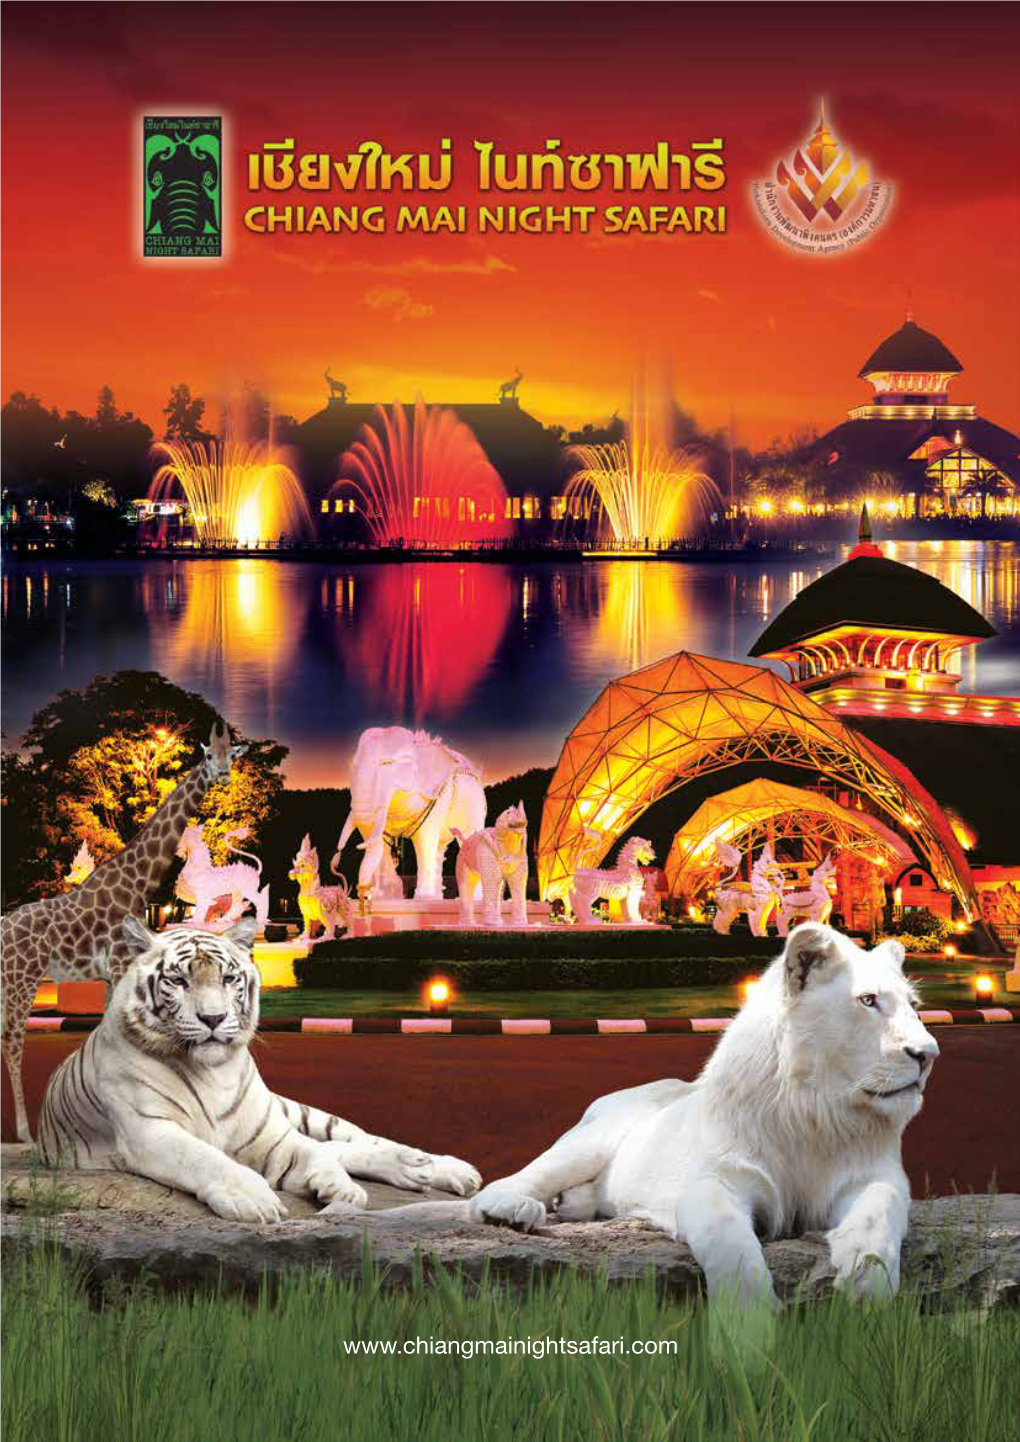 เชียงใหม่ไนท์ซาฟารี เป็นหน่วยงานของรัฐบาล ที่ดำ�เนินงานโดยการ Chiang Mai Night Safari